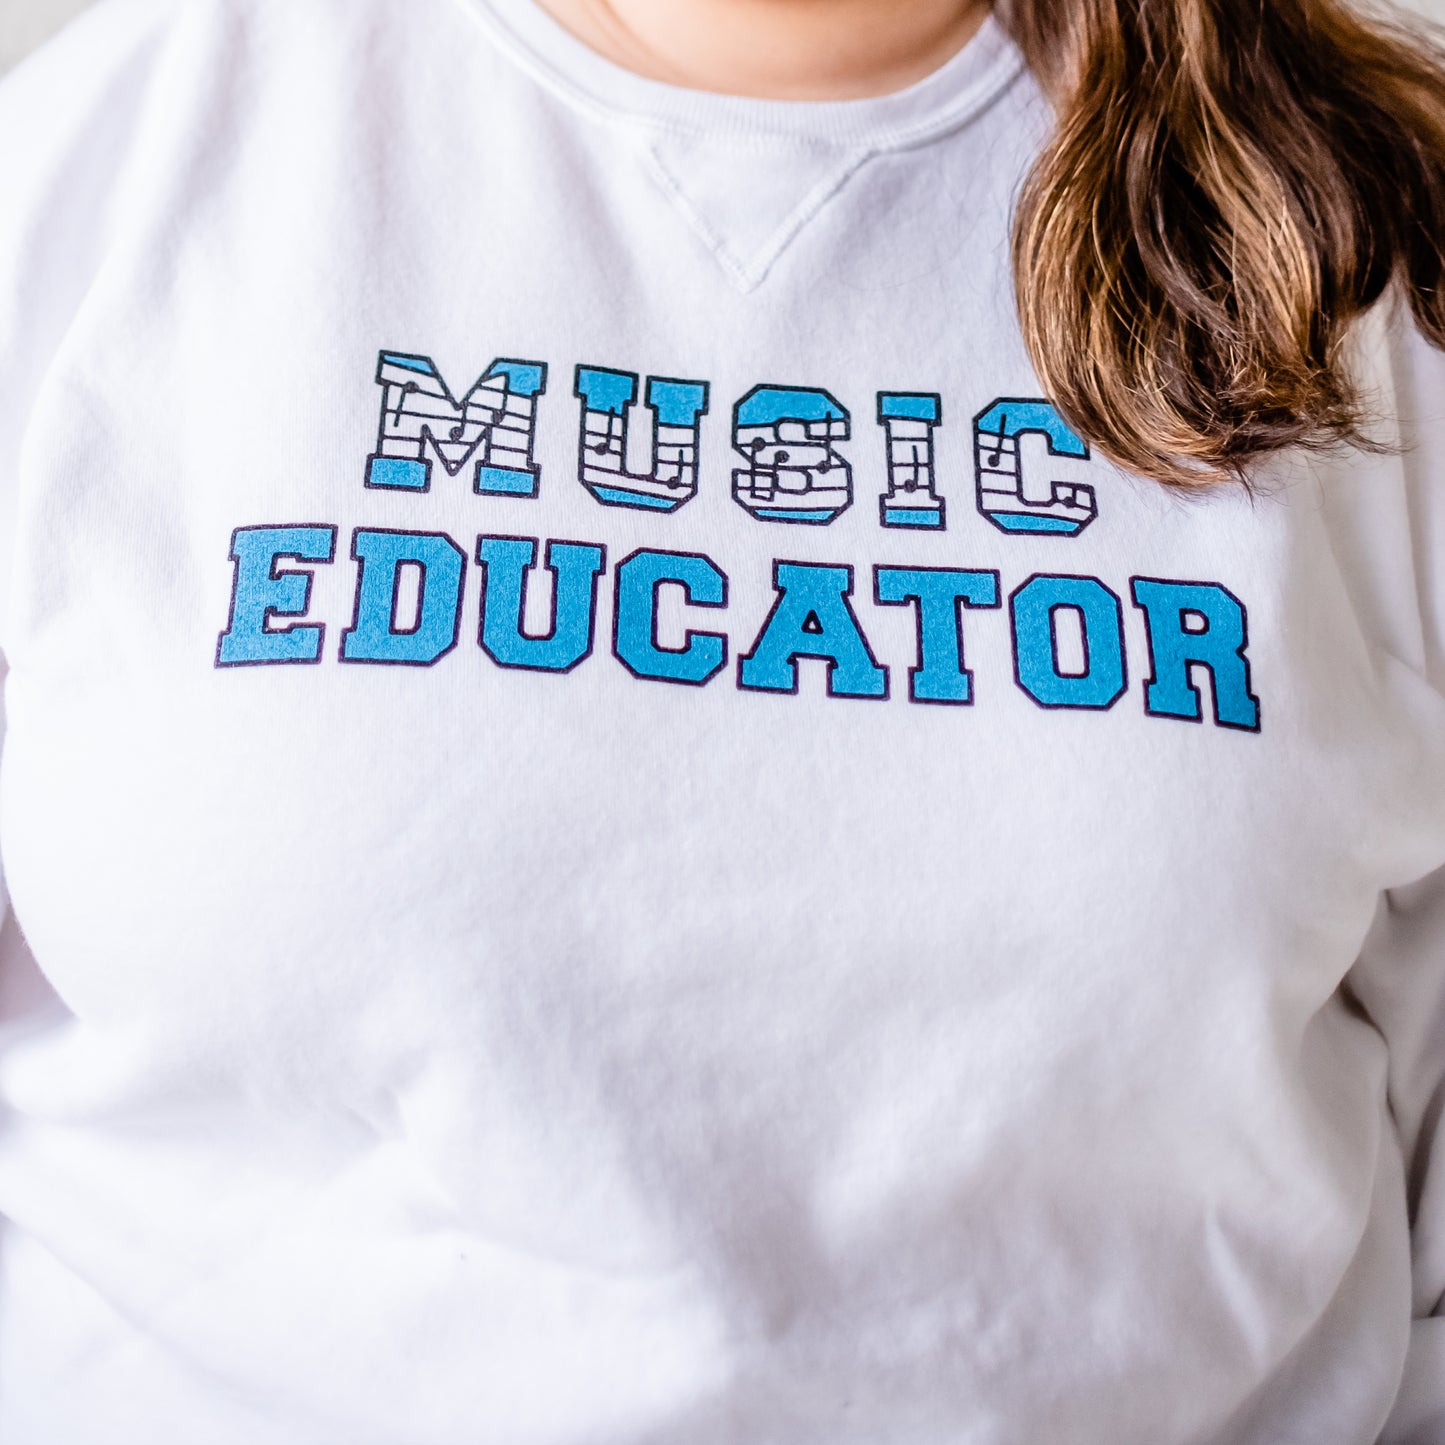 Music Educator Sweatshirt